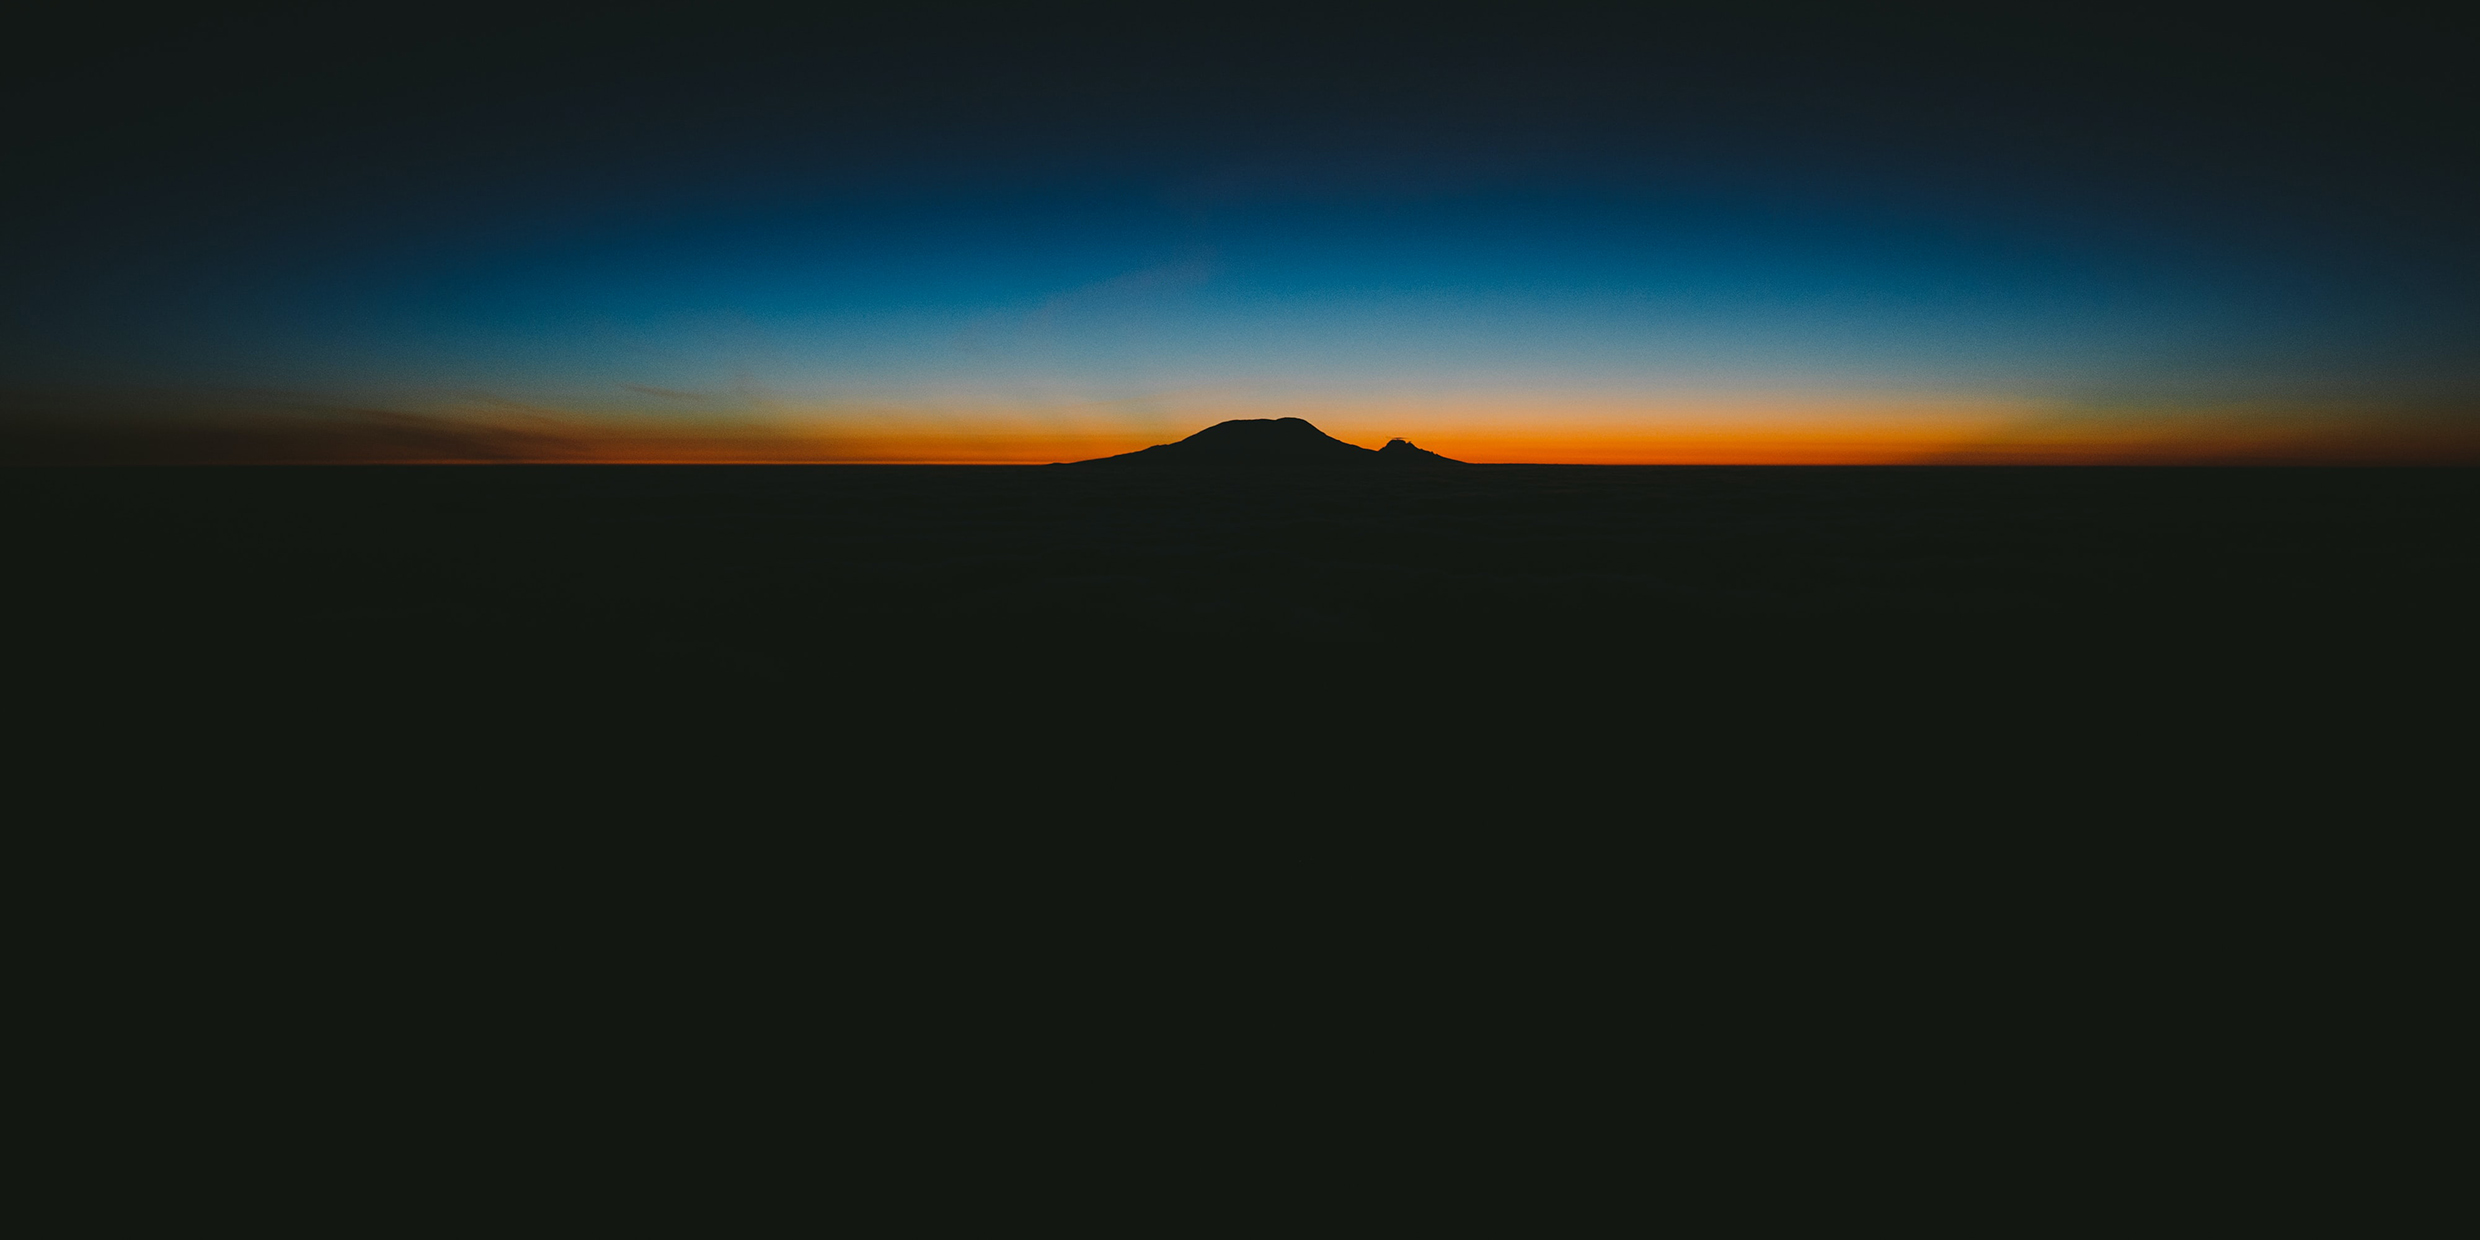 Image of a dark horizon at dusk